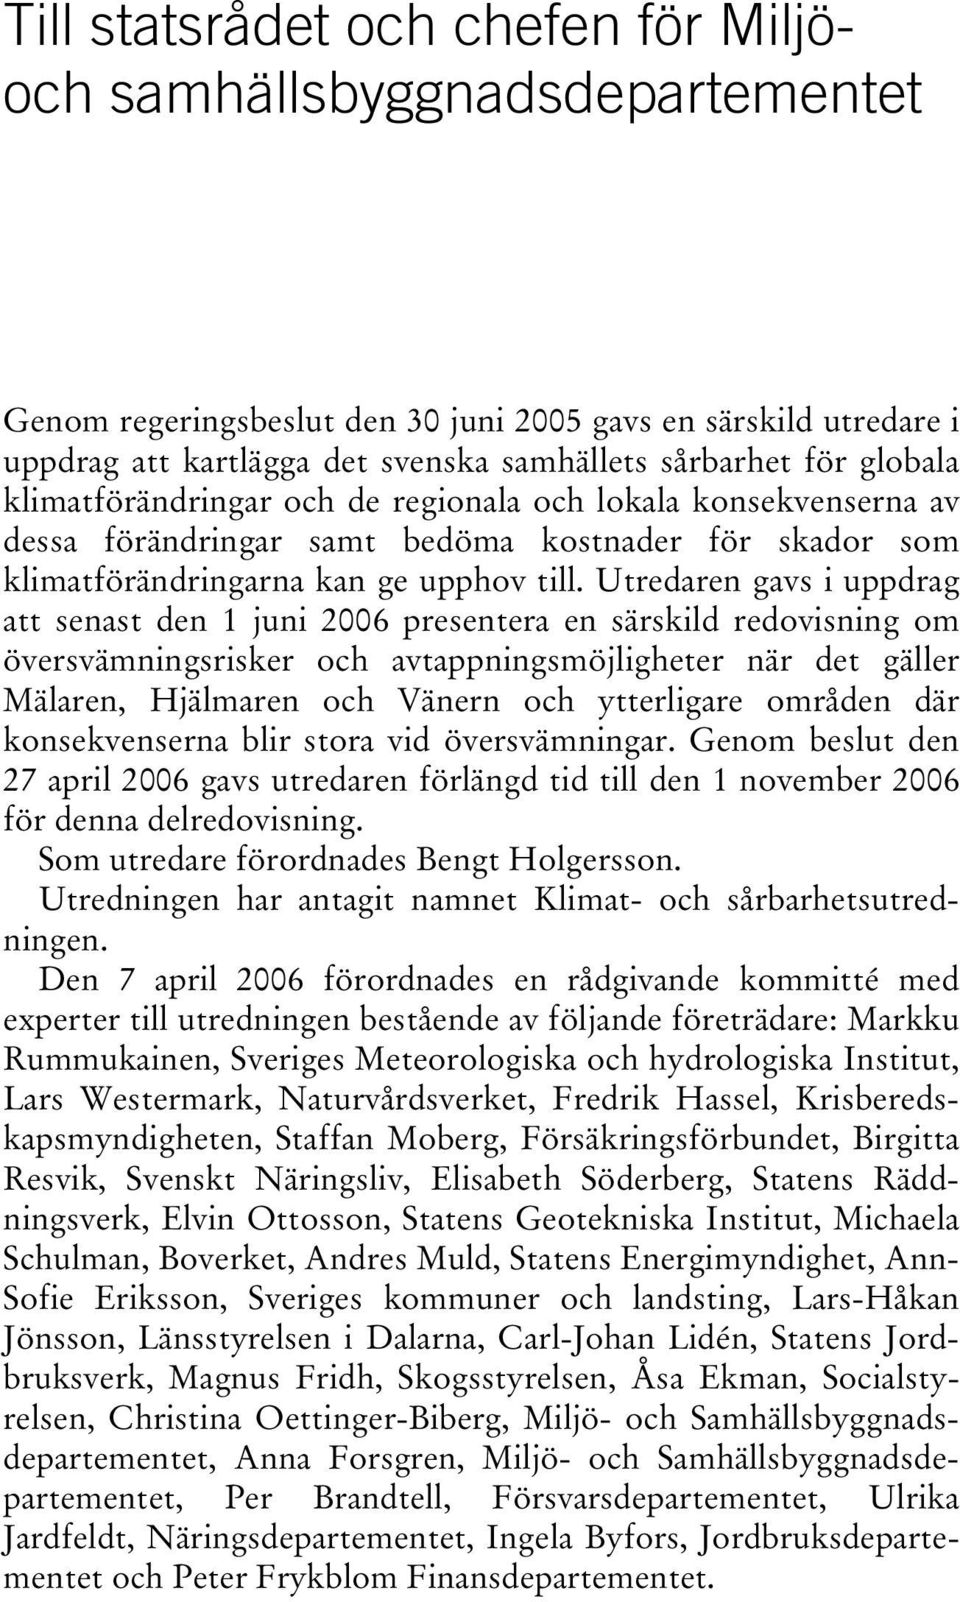 Utredaren gavs i uppdrag att senast den 1 juni 2006 presentera en särskild redovisning om översvämningsrisker och avtappningsmöjligheter när det gäller Mälaren, Hjälmaren och Vänern och ytterligare